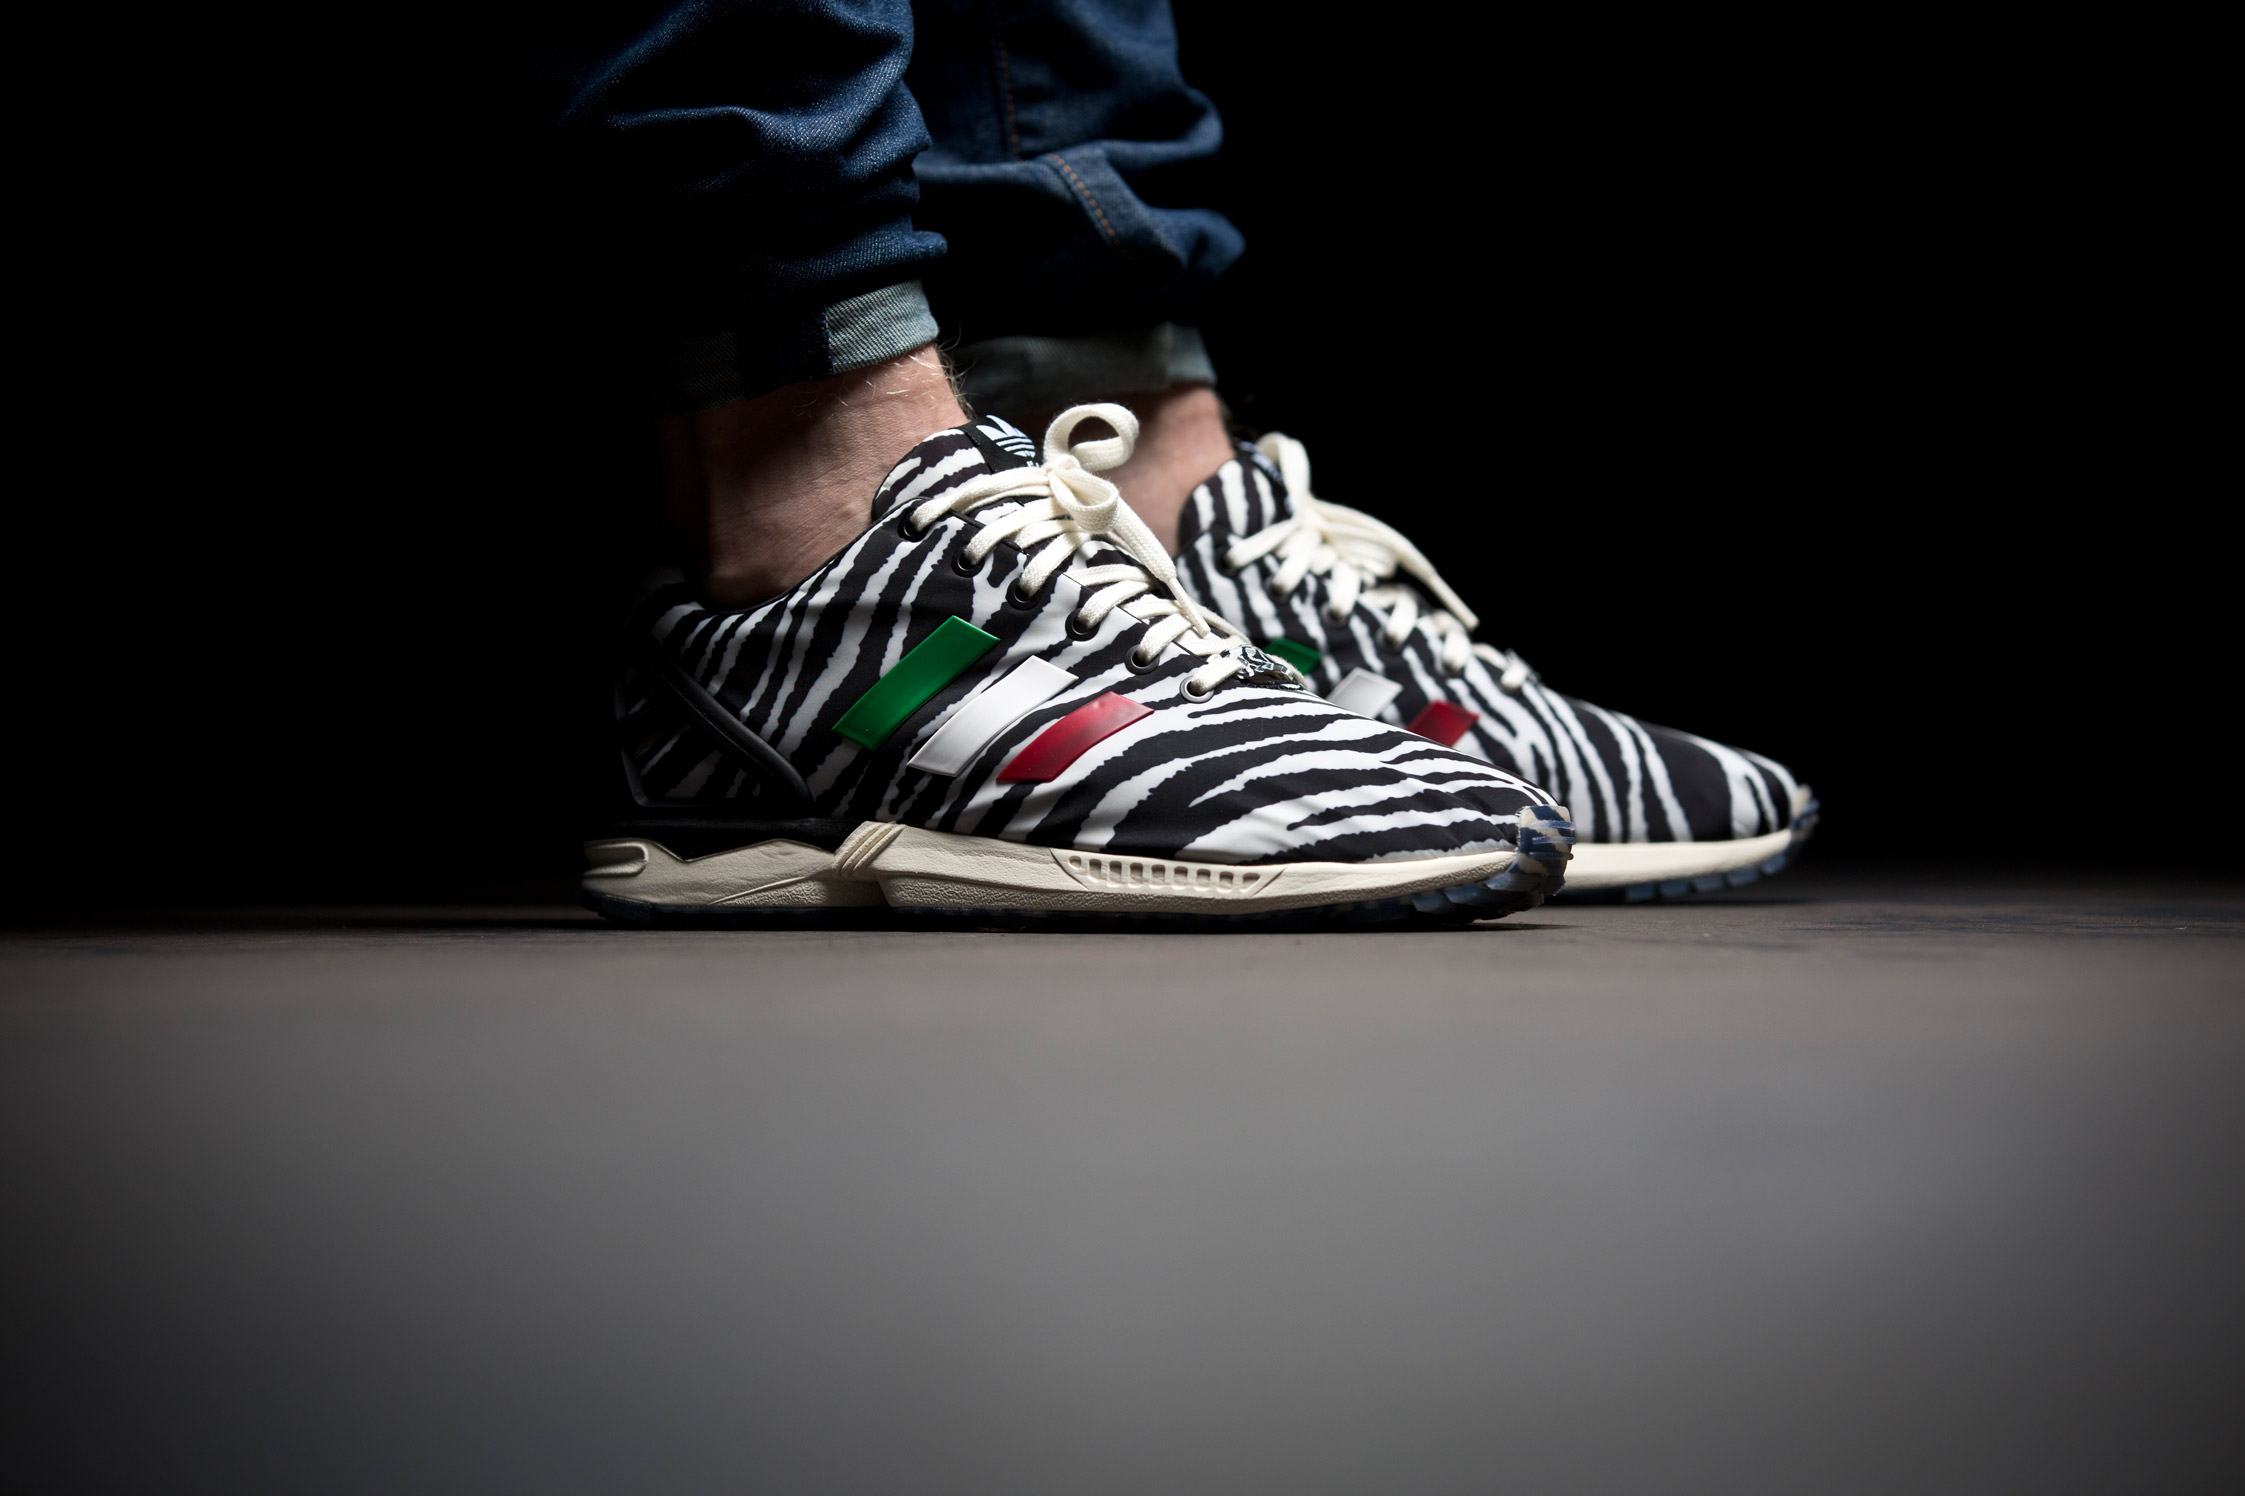 adidas zx flux zebra